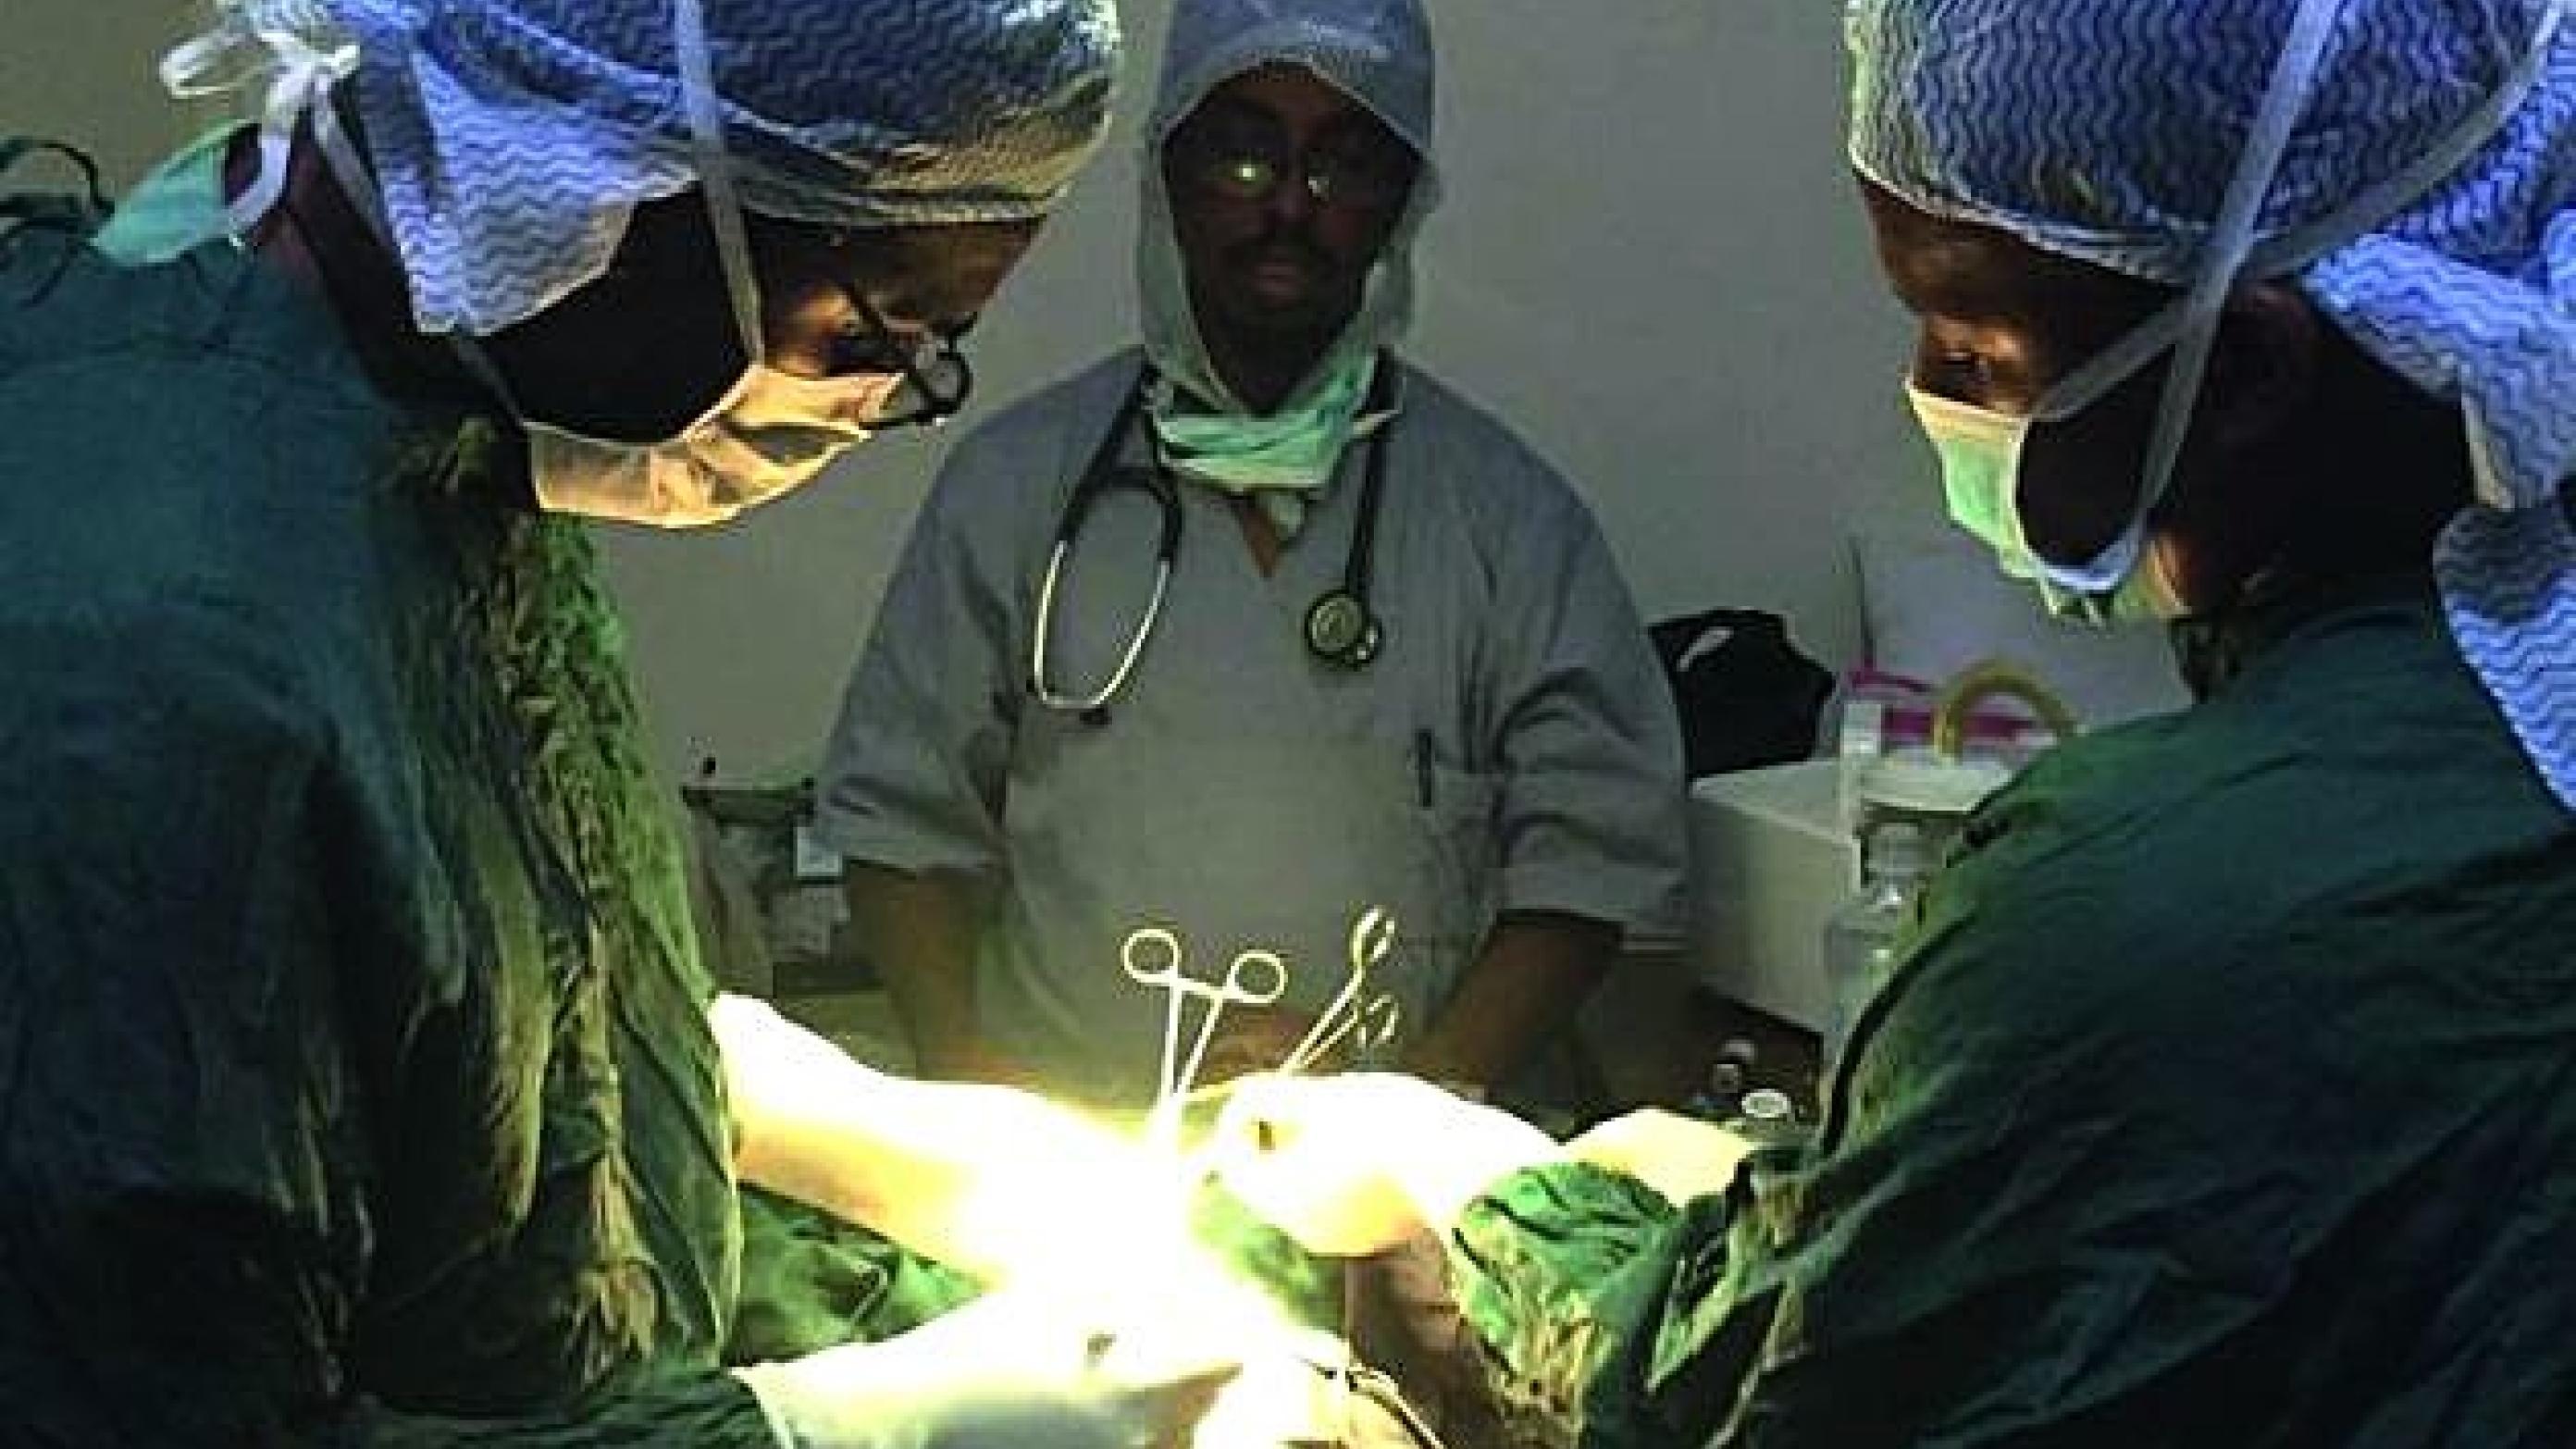 Medlemmer af teamet, udsendt af Somalisk Sundhedsforbund i Danmark, i gang med en operation. Fra venstre kirurg Shafie Adan Dirir, anæstesilæge Abdi Farah Ali og sygeplejerske Hafsa Ahmed. Foto: Privat